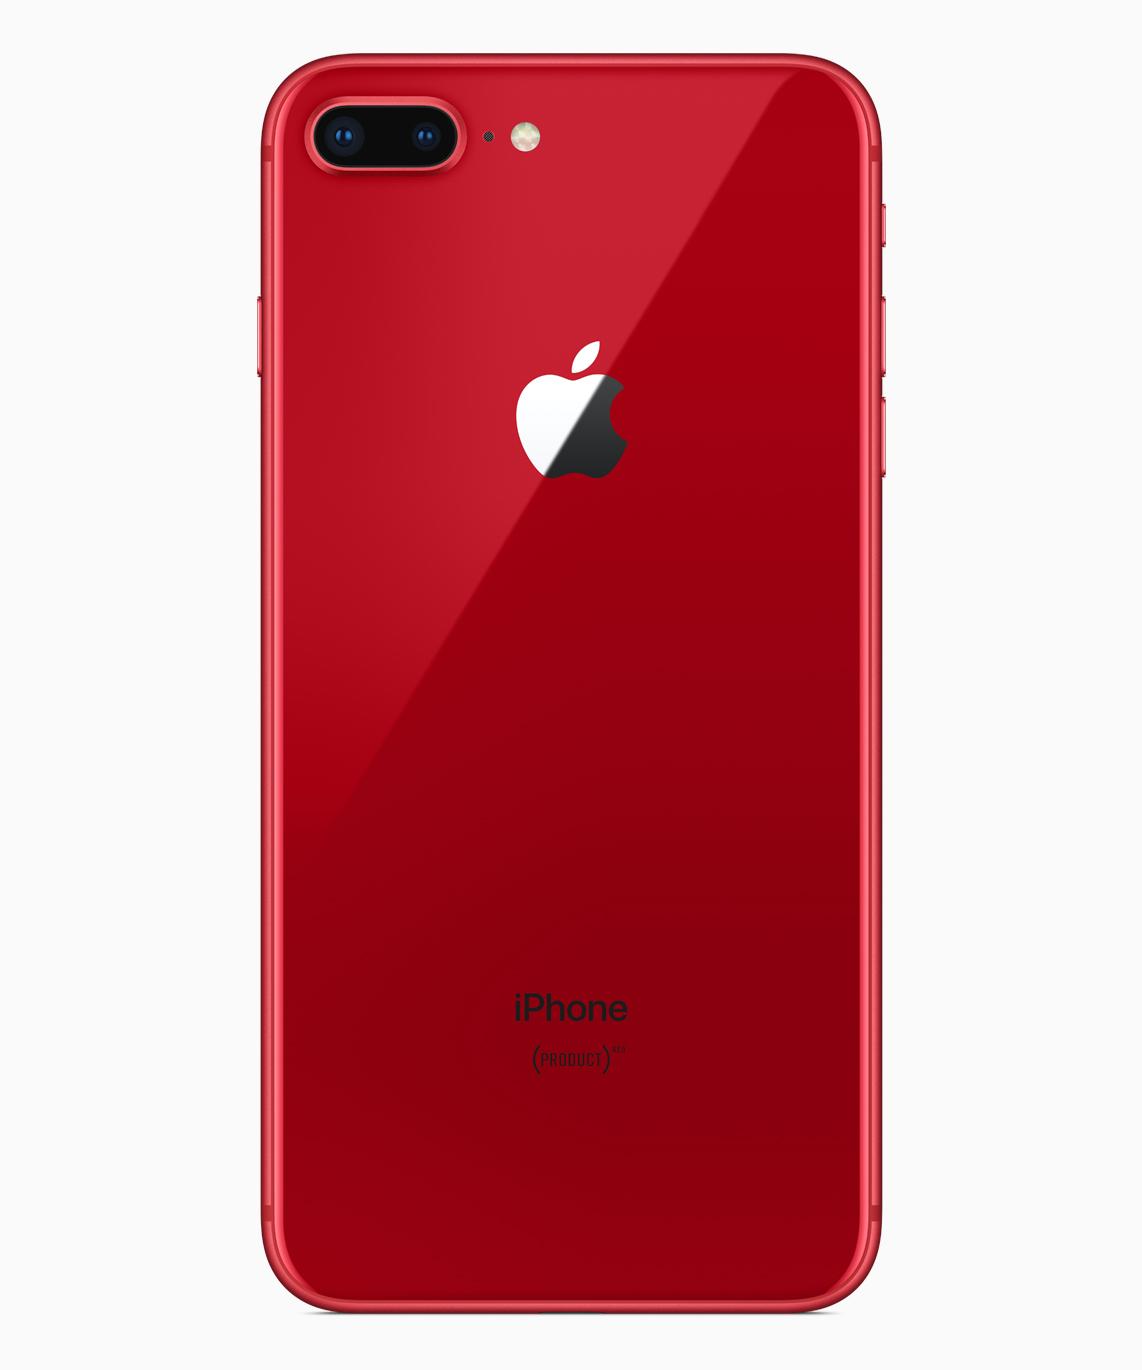 【早い者勝ち】iPhone8 product red 64G 付属品完備